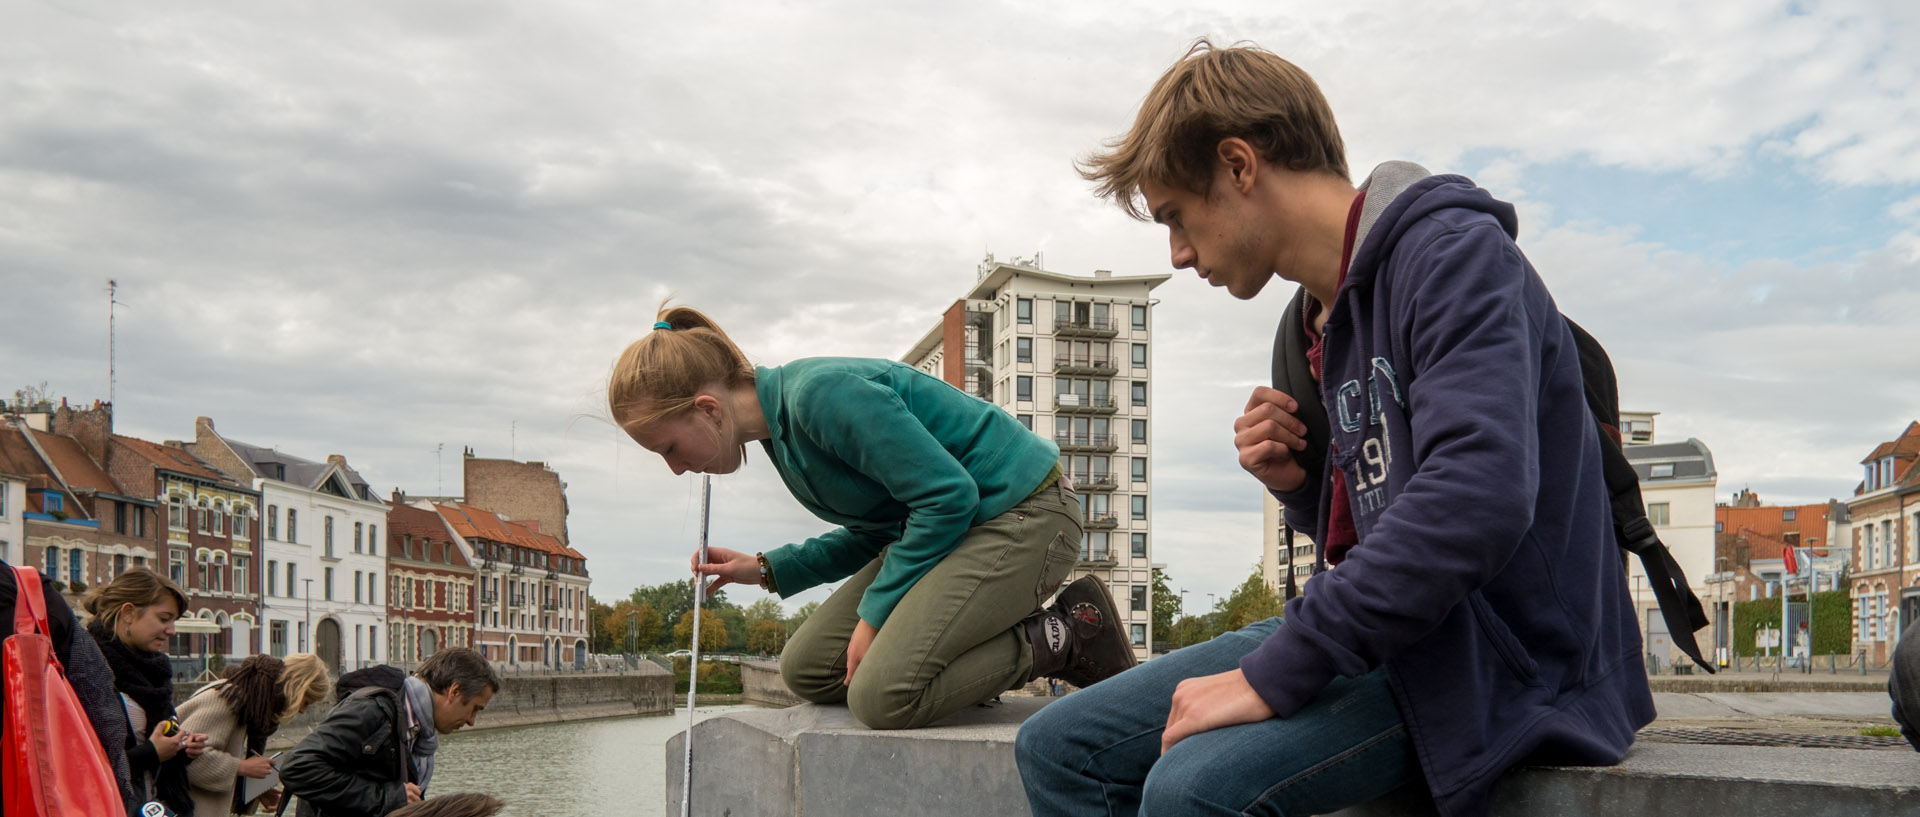 Etudiants en architecture mesurant la quai de Wault, à Lille.